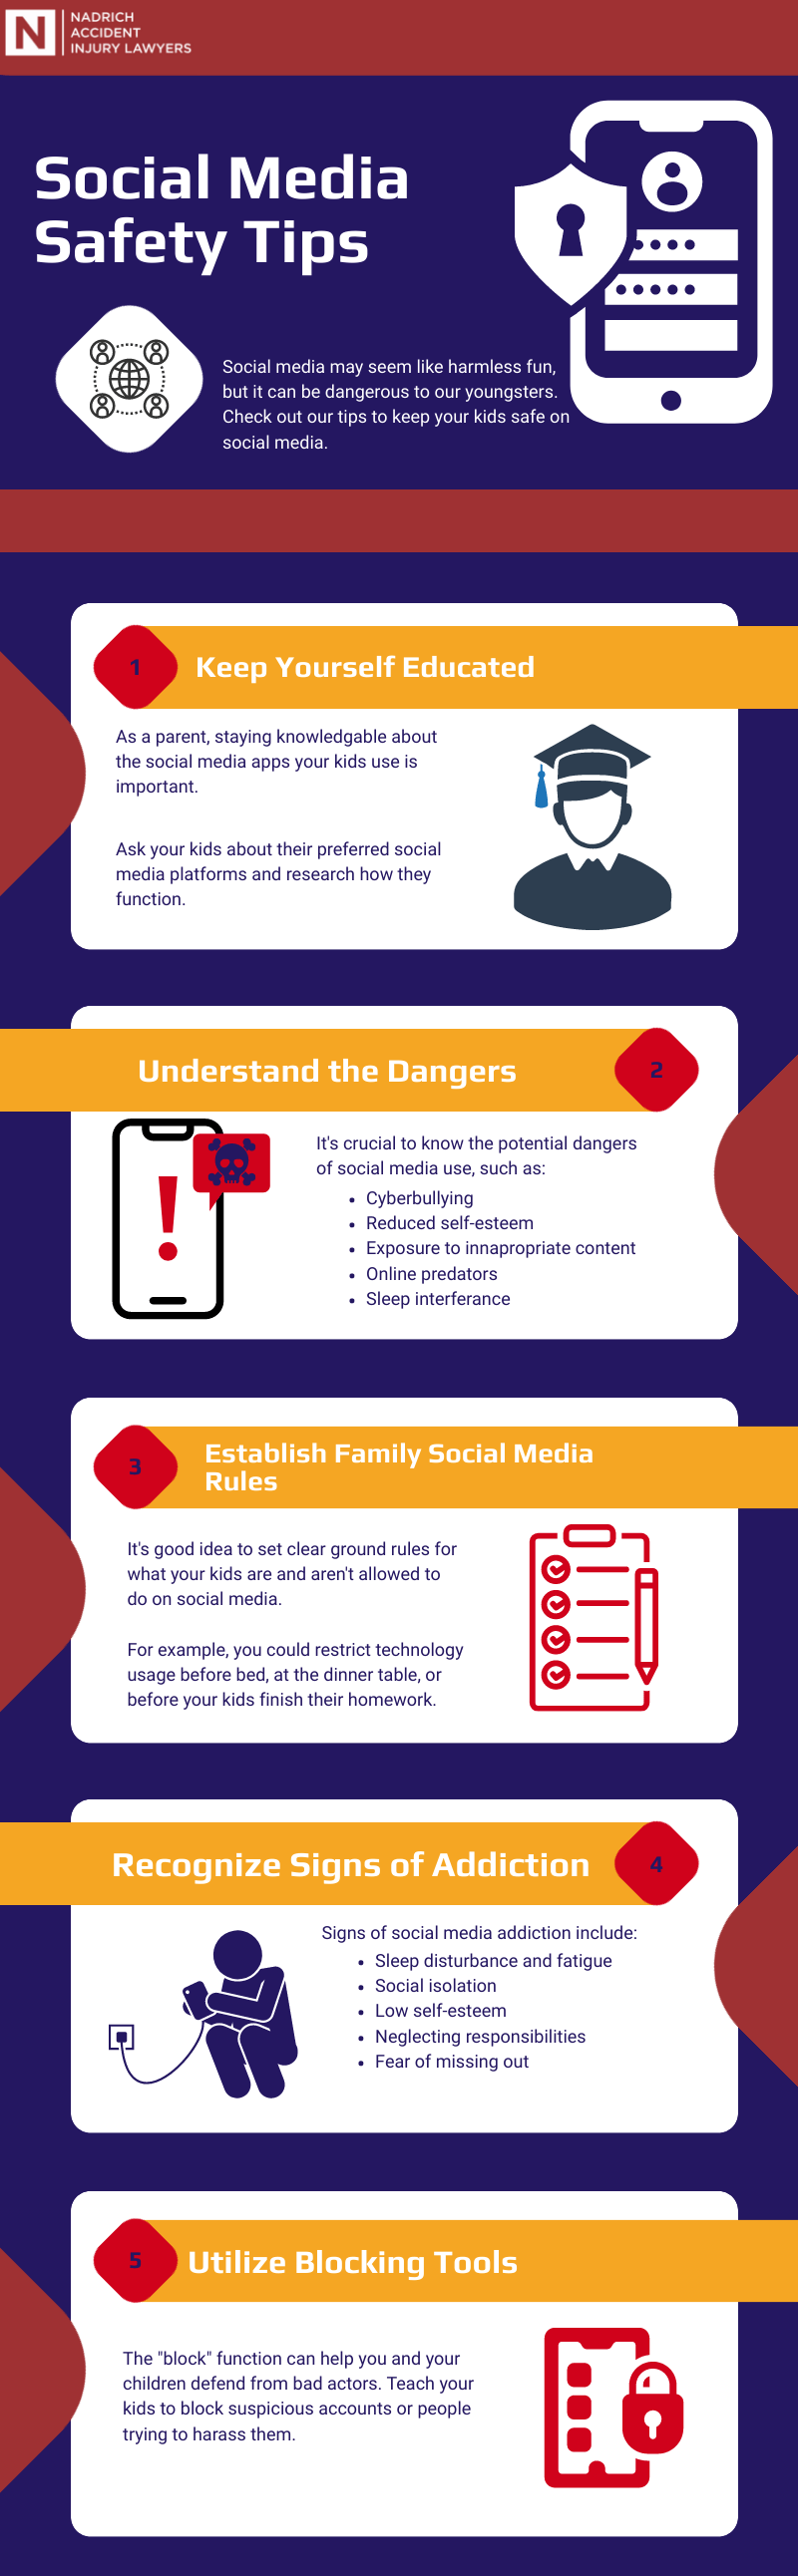 Social media safety tips